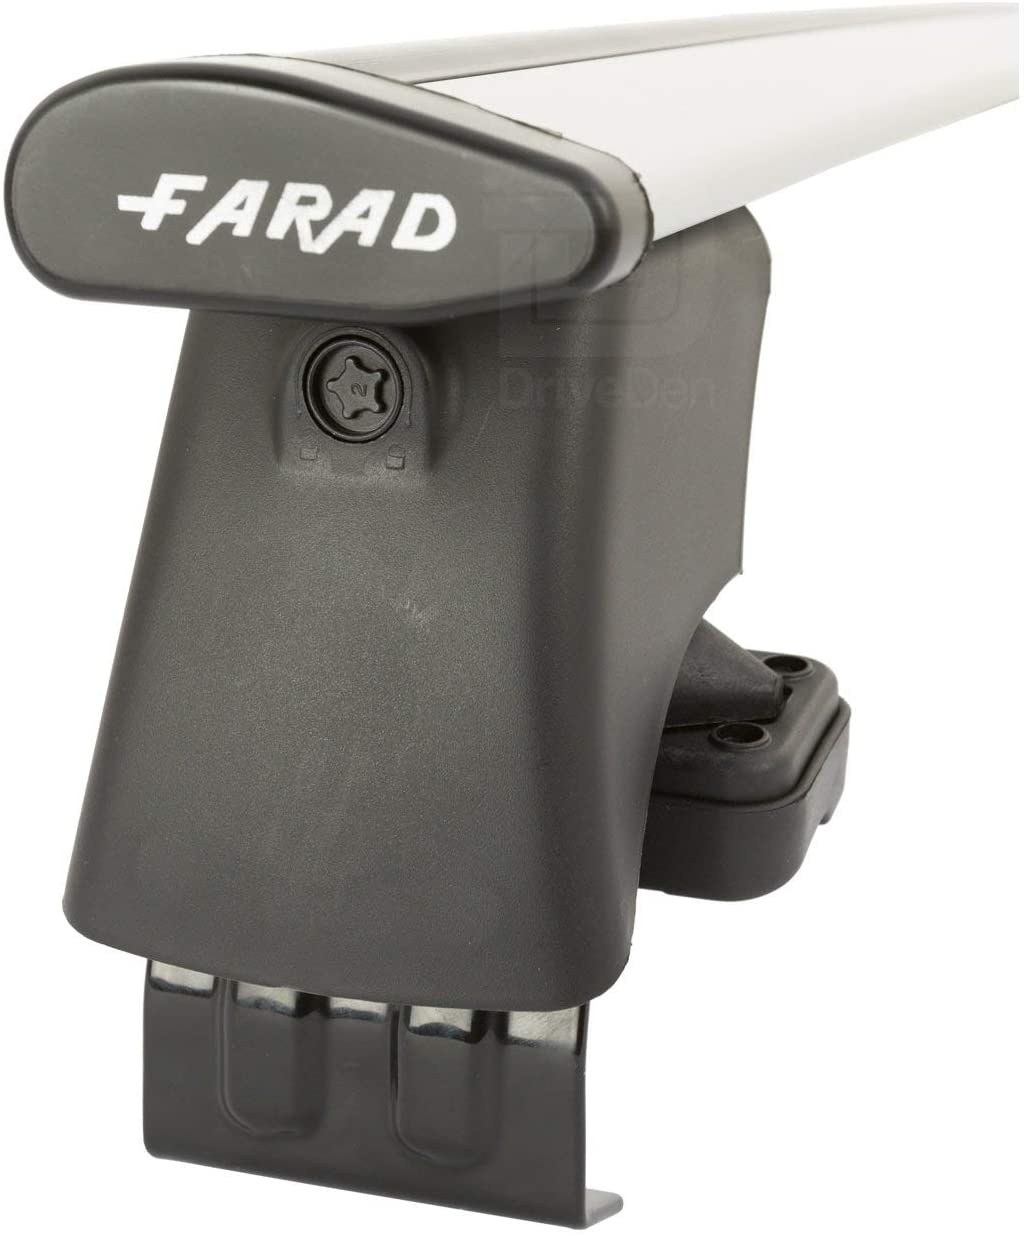 FARAD-Kit H2 per barre portatutto - Kia Rio 2005-2010 (senza corrimano)